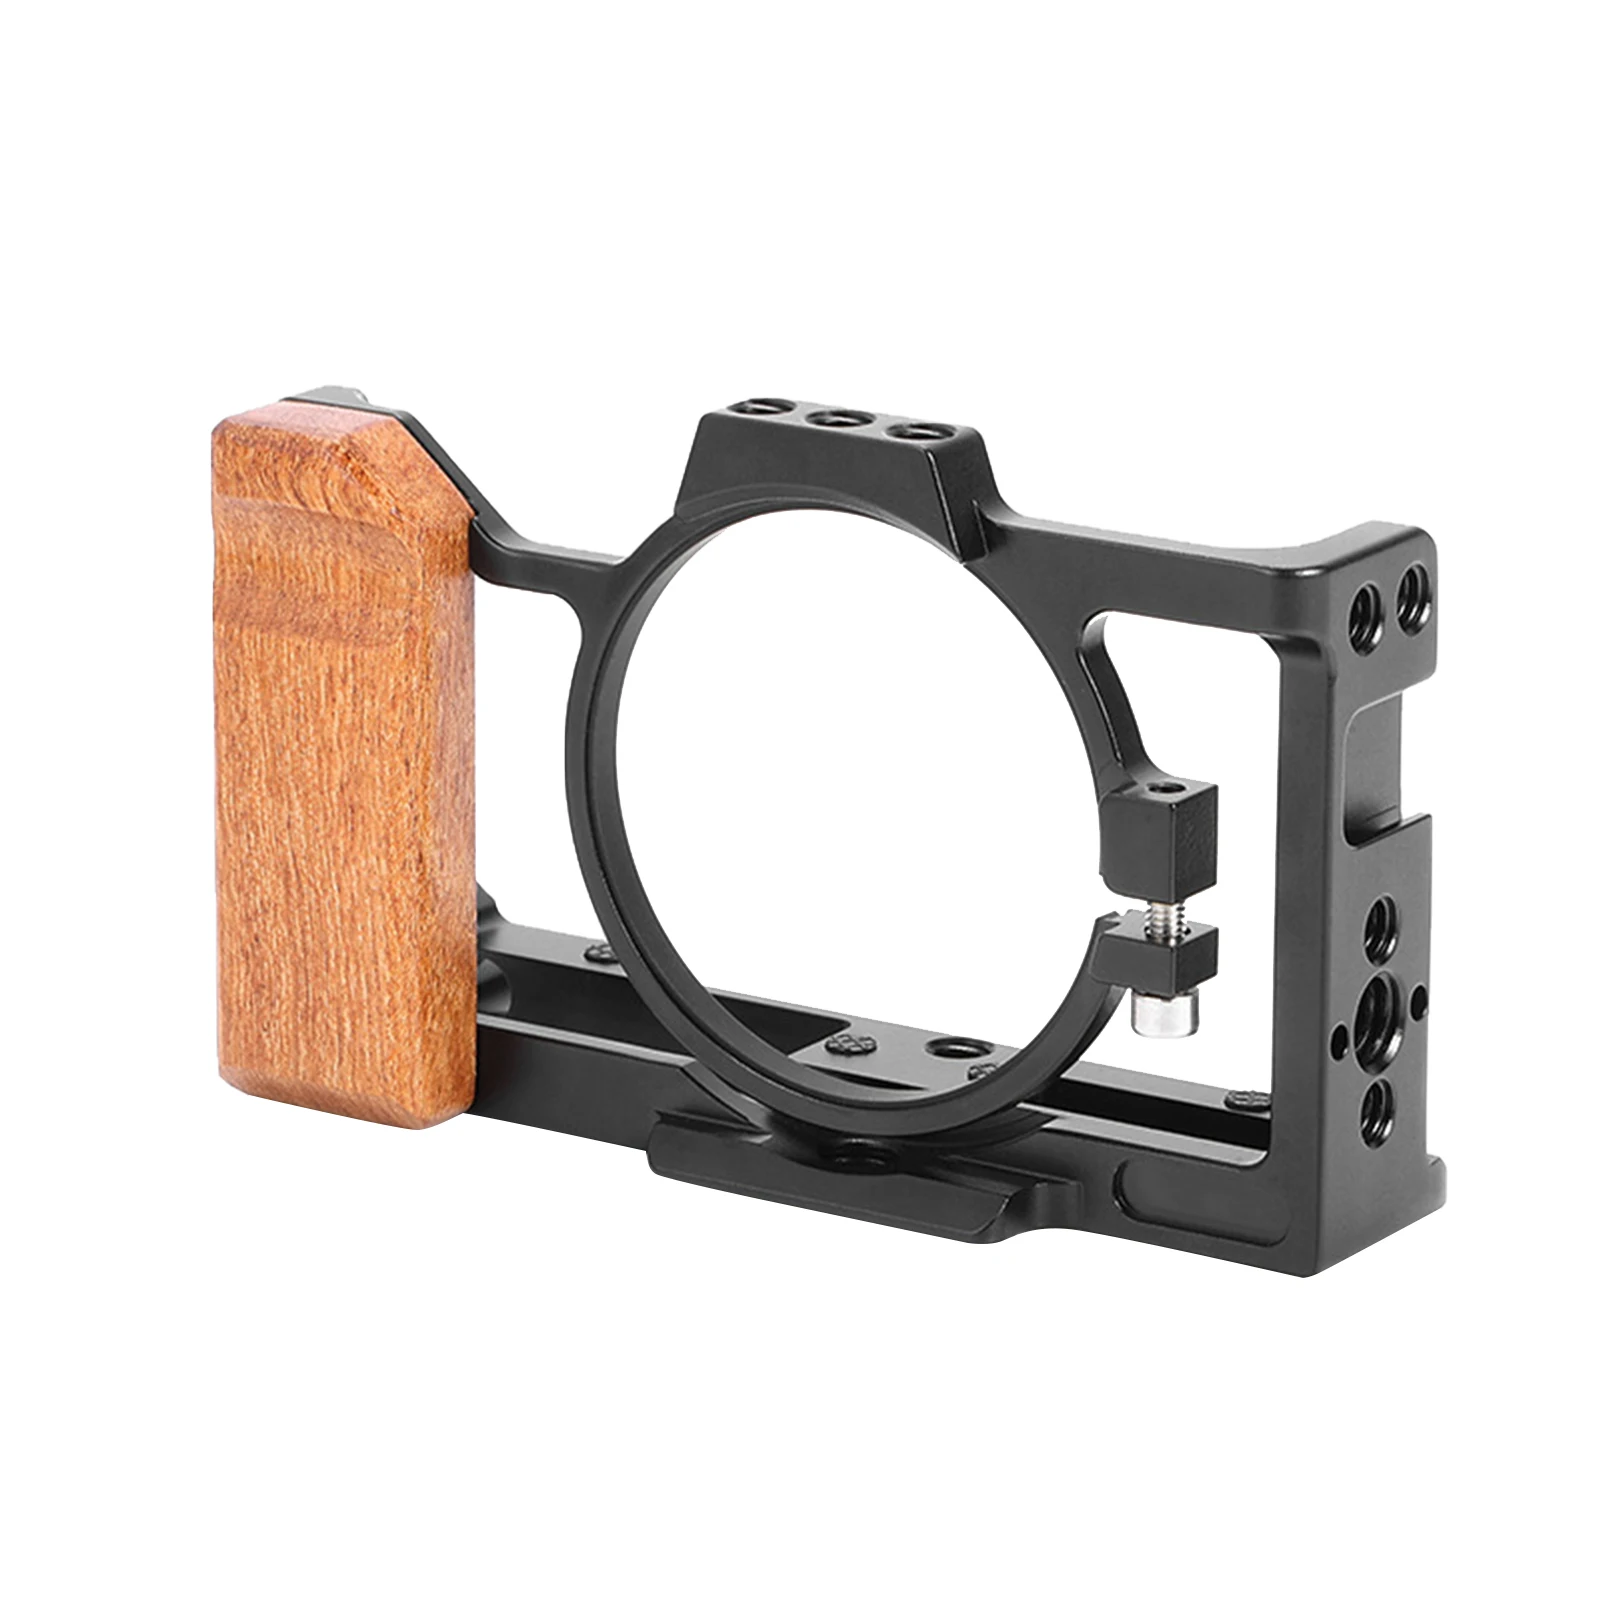 

Защитная рамка для камеры Sony ZV 1, футляр для отвода тепла и зарядки, несколько расширителей, аксессуары с деревянной ручкой